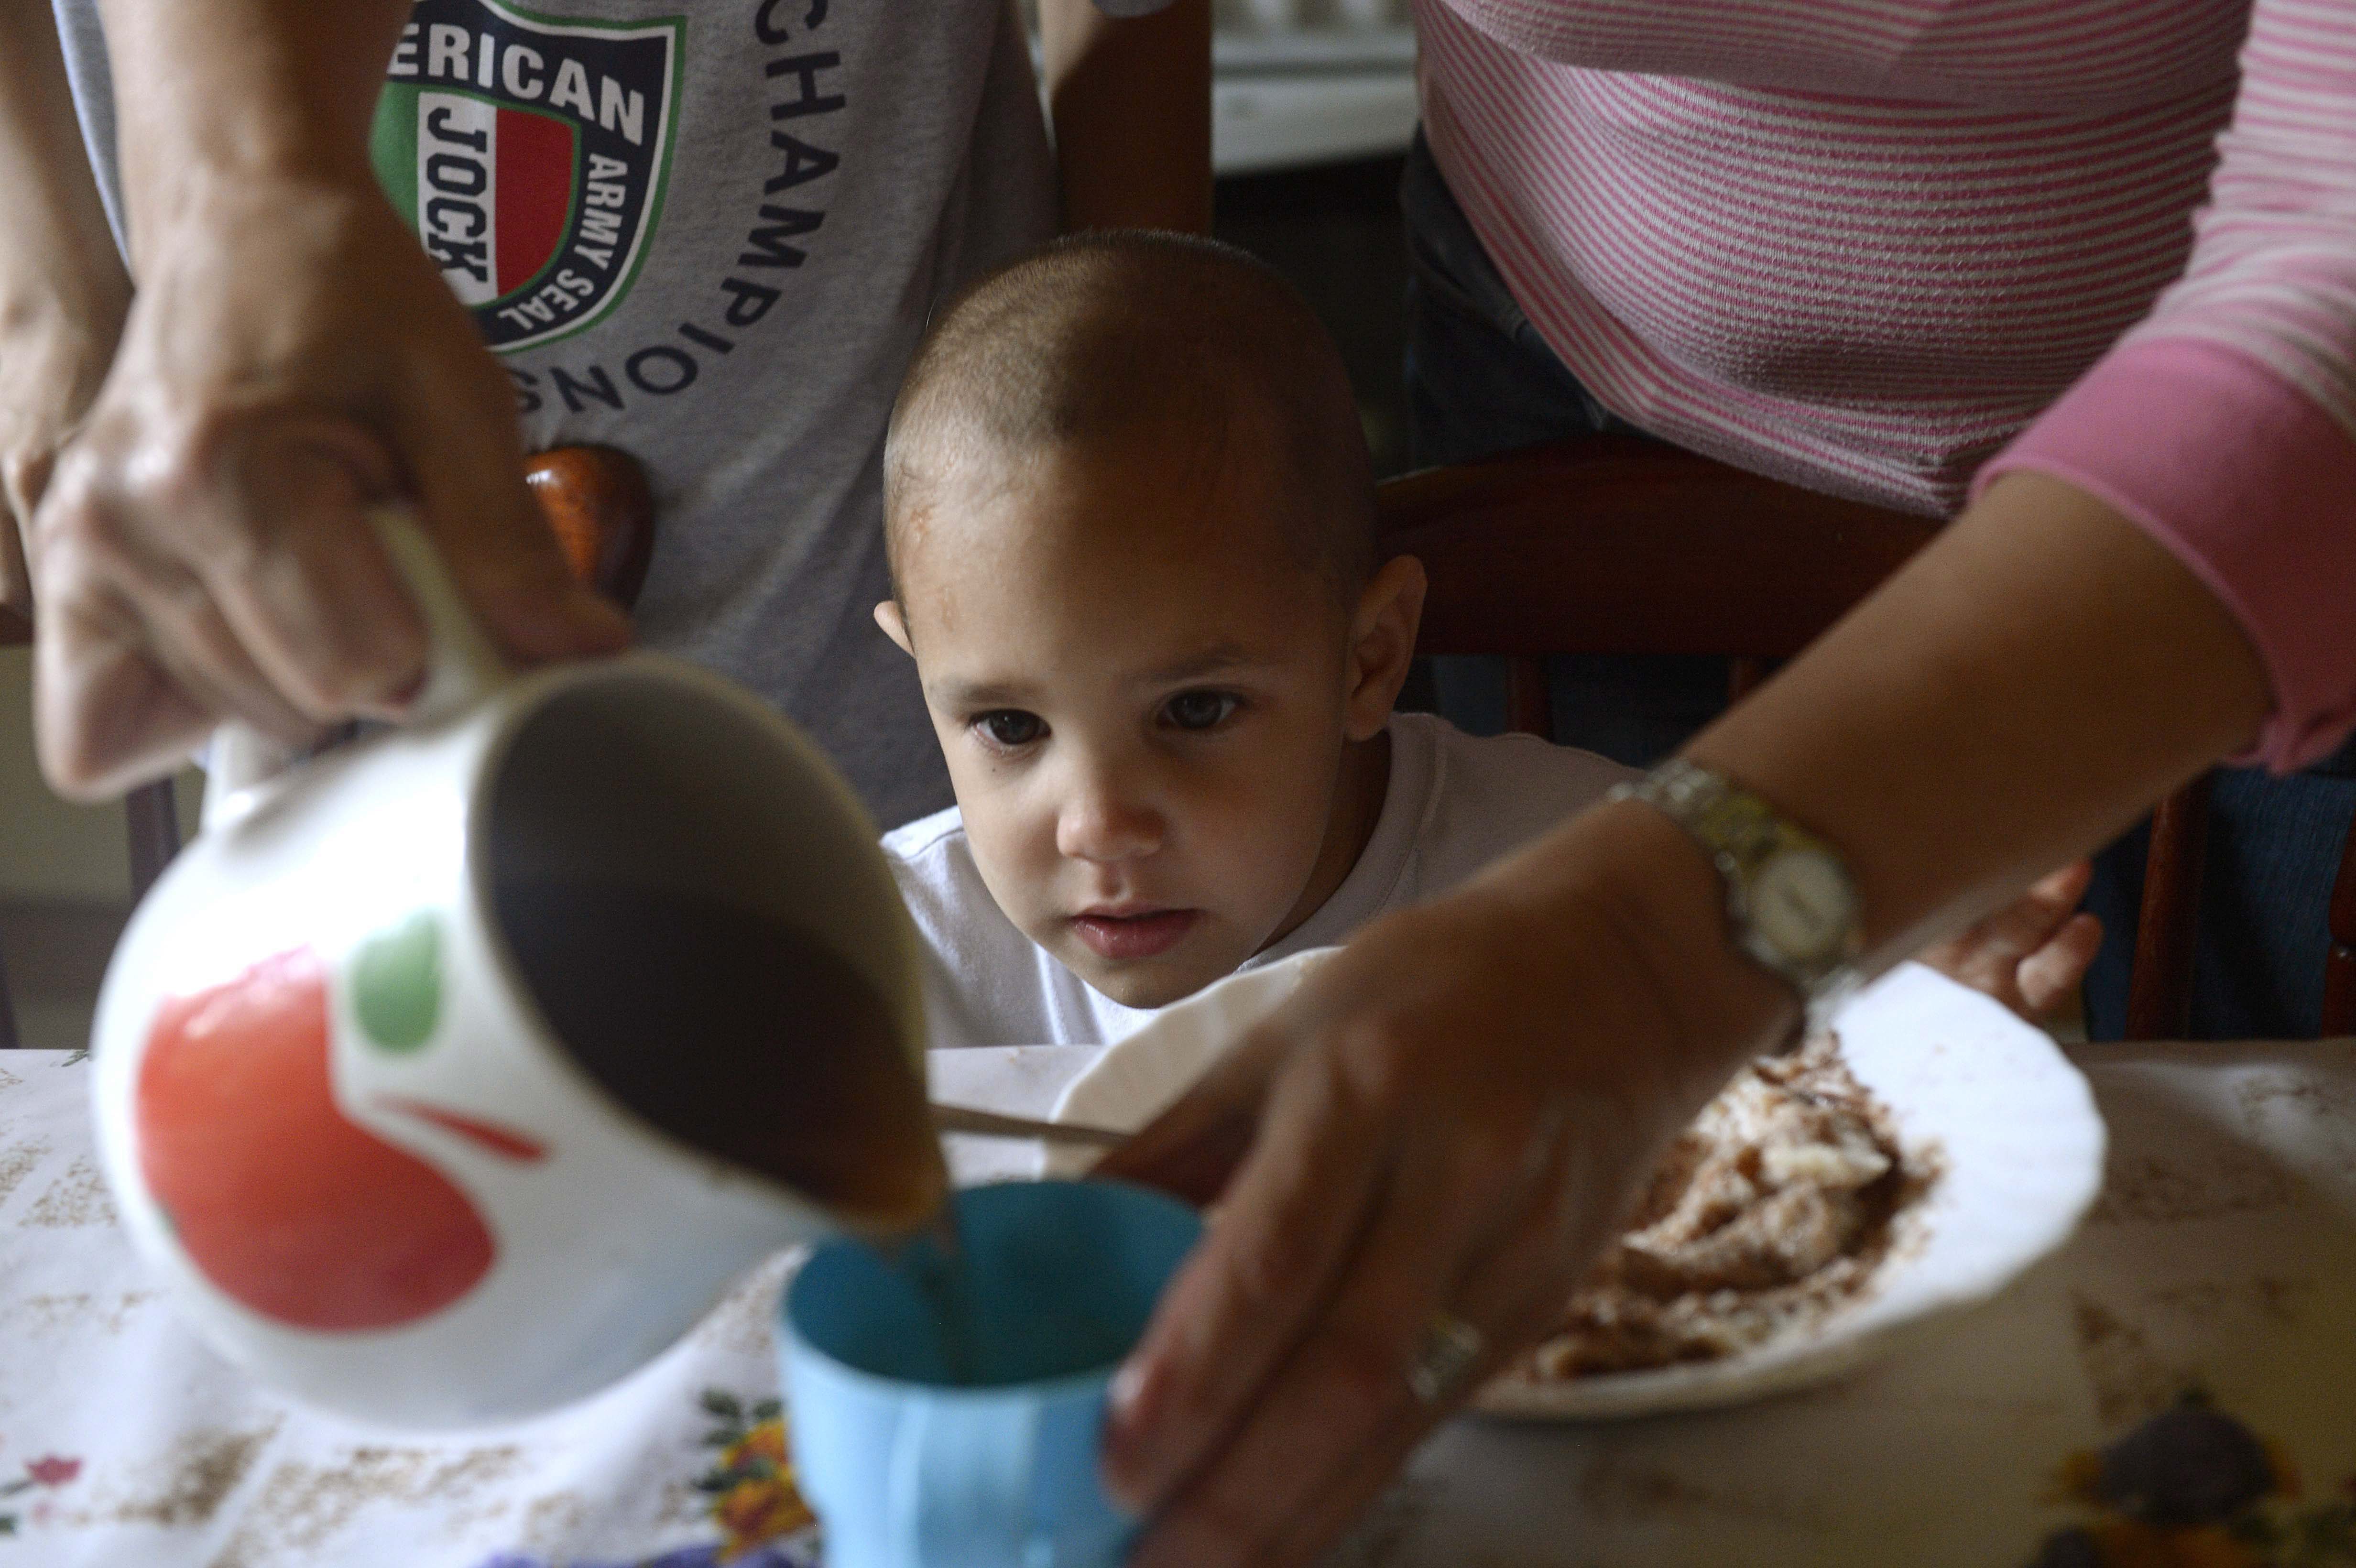 Kisfiú vacsorázik egy II. kerületi gyermekotthonban 2014. szeptember 12-én.